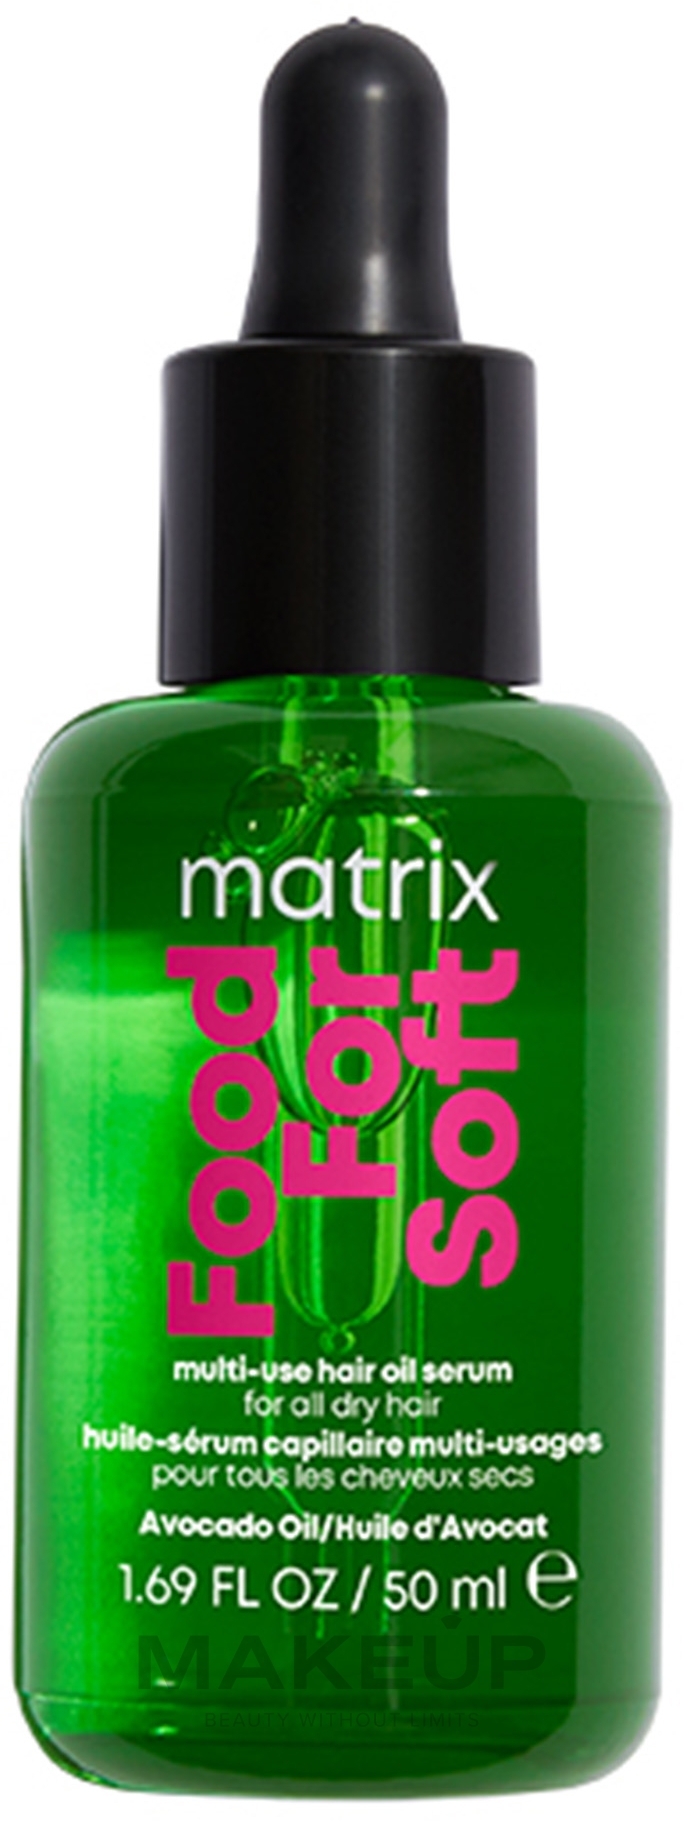 Multifunktionales Öl-Serum für das Haar - Matrix Food For Soft Multi-Use Hair Oil Serum — Bild 50 ml